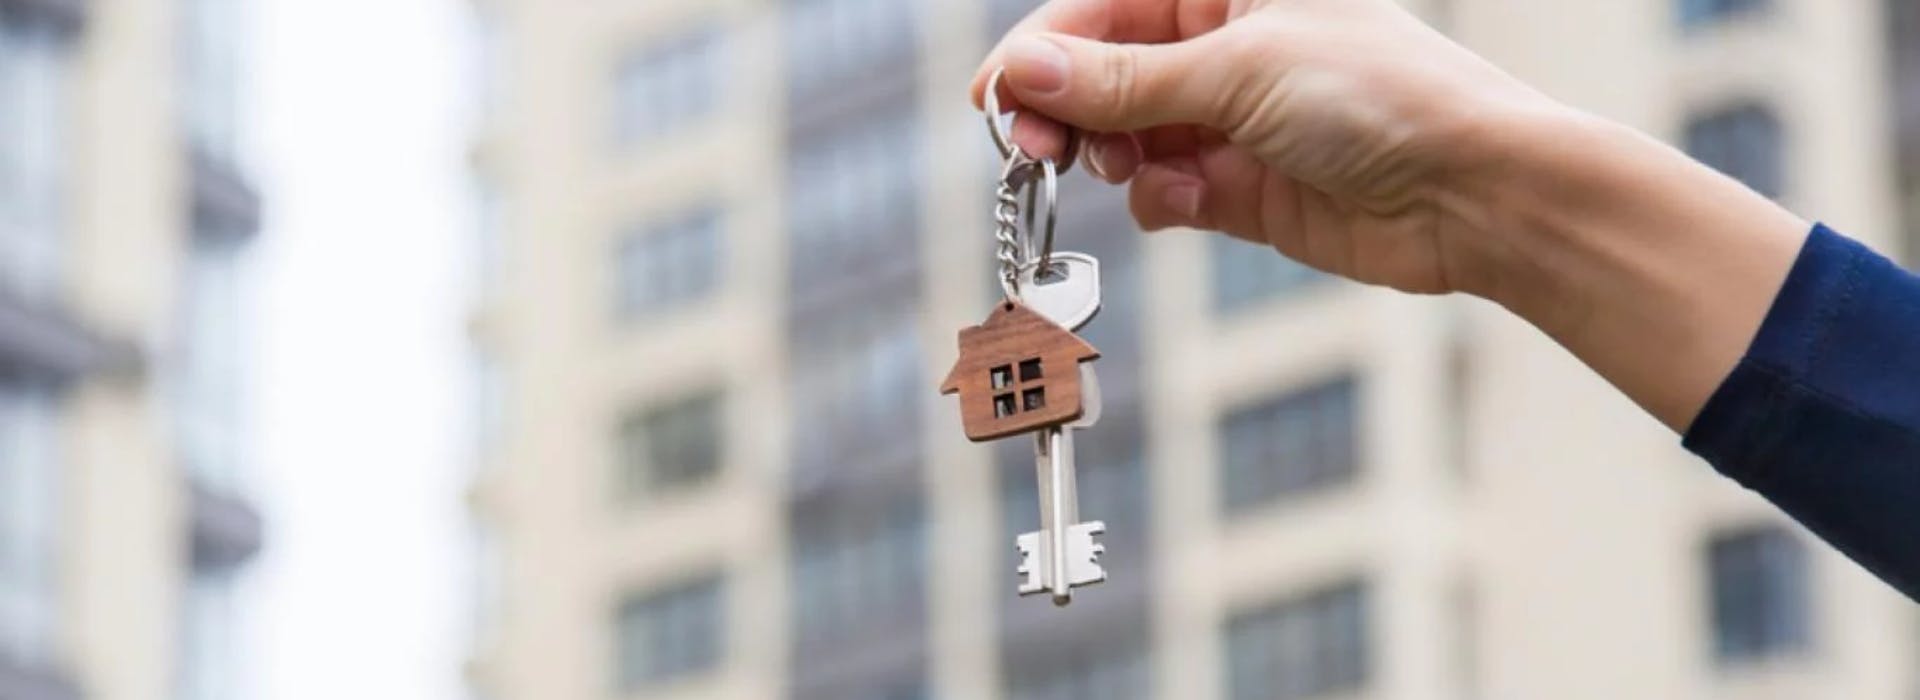 Las claves del negocio de comprar una propiedad para alquilar y los barrios que dejan la mejor renta
